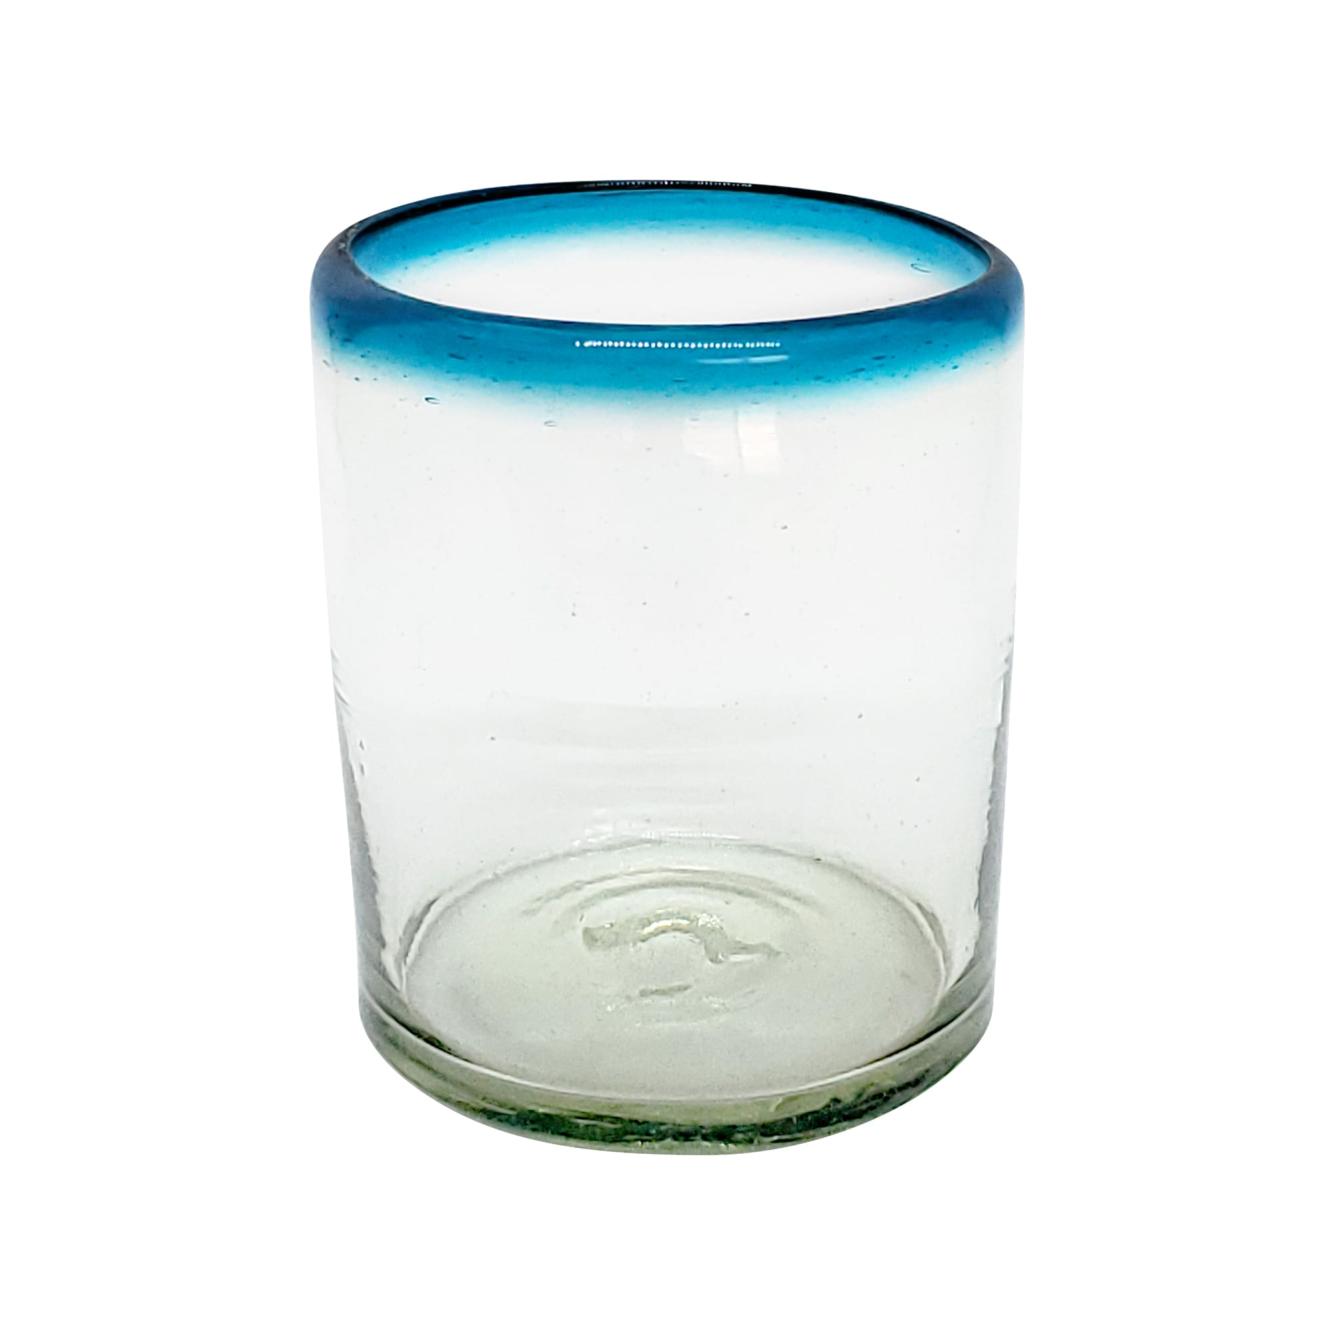 Ofertas / vasos chicos con borde azul aqua / Éstos vasos chicos son un gran complemento para su juego de jarra y vasos grandes.